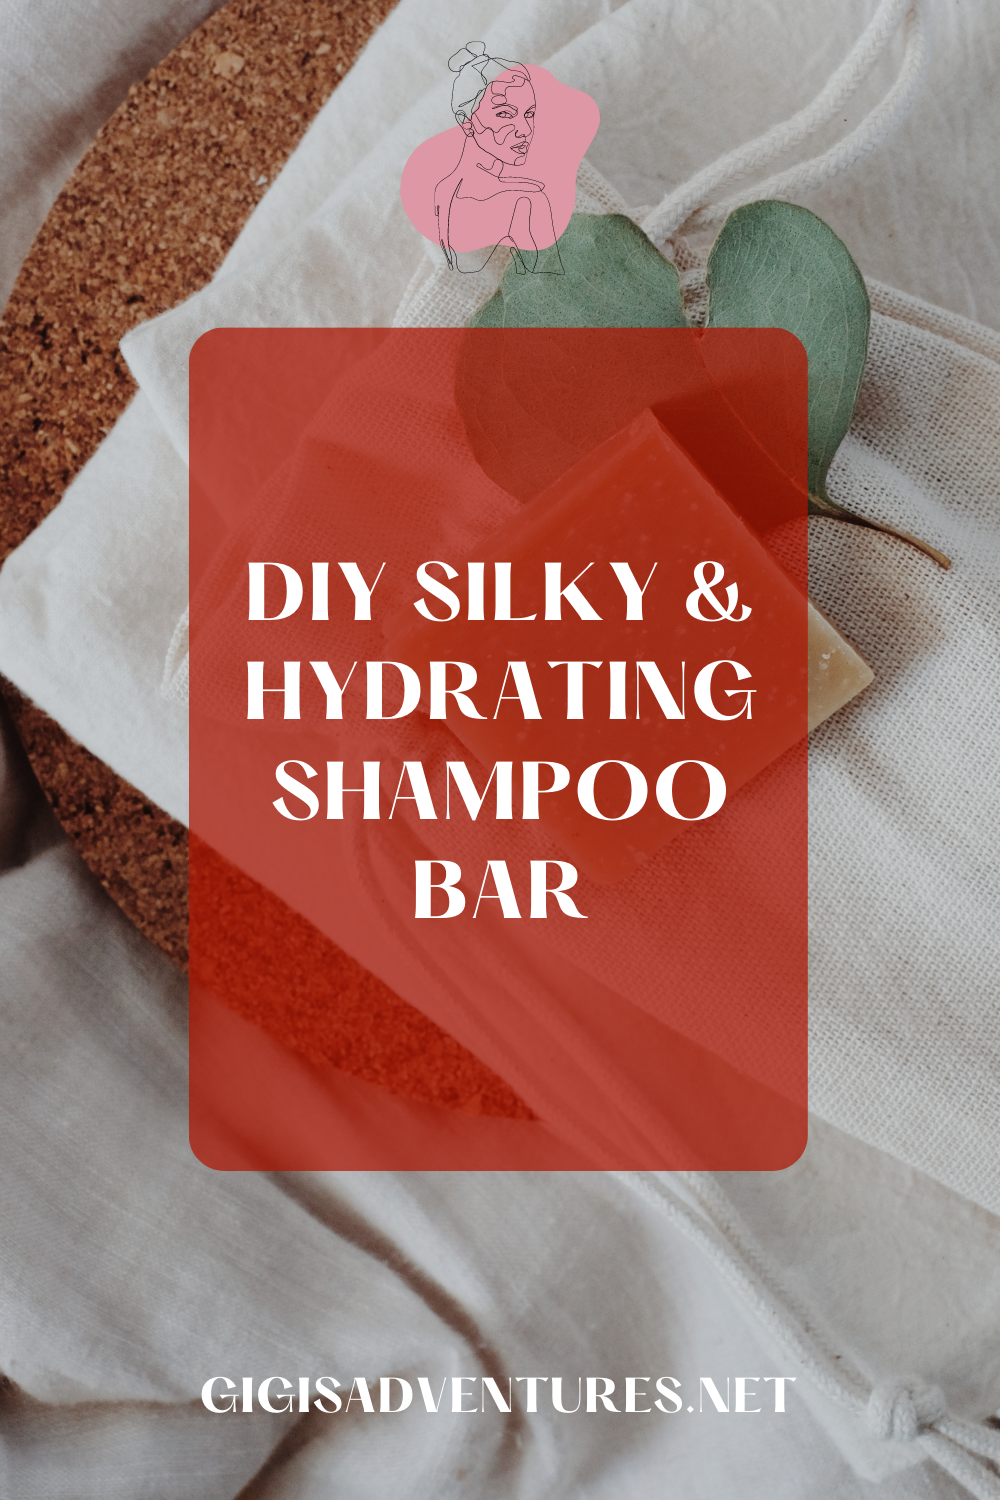 DIY Silky & Hydrating Shampoo Bar | DIY Shampoo Bar